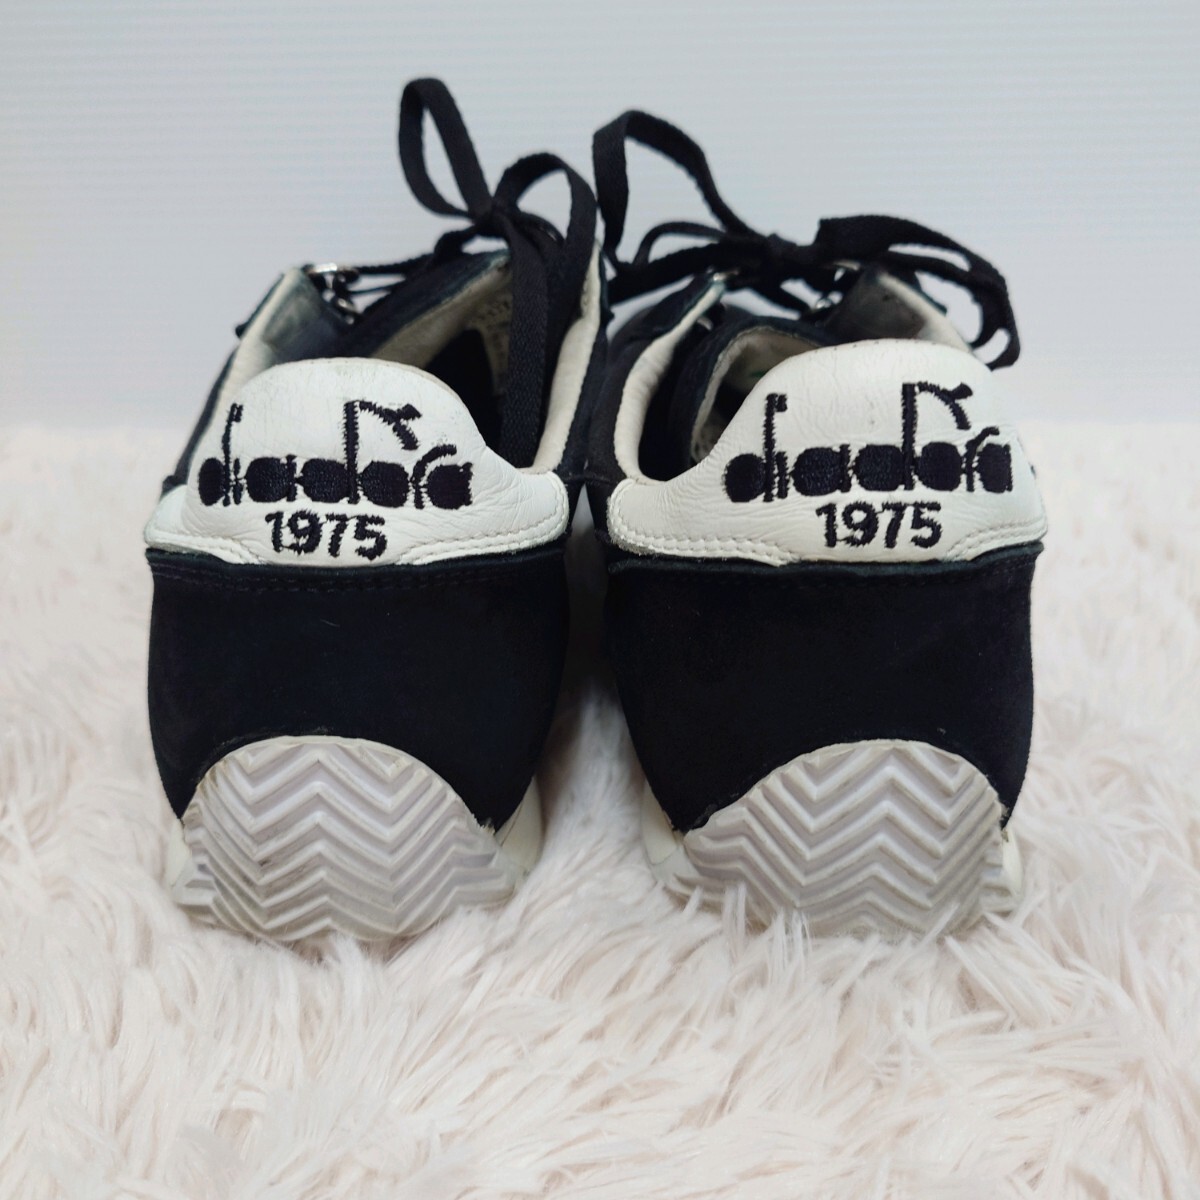 diadora HERITAGE ディアドラ スニーカー 靴 27.5cm メンズ ブラック